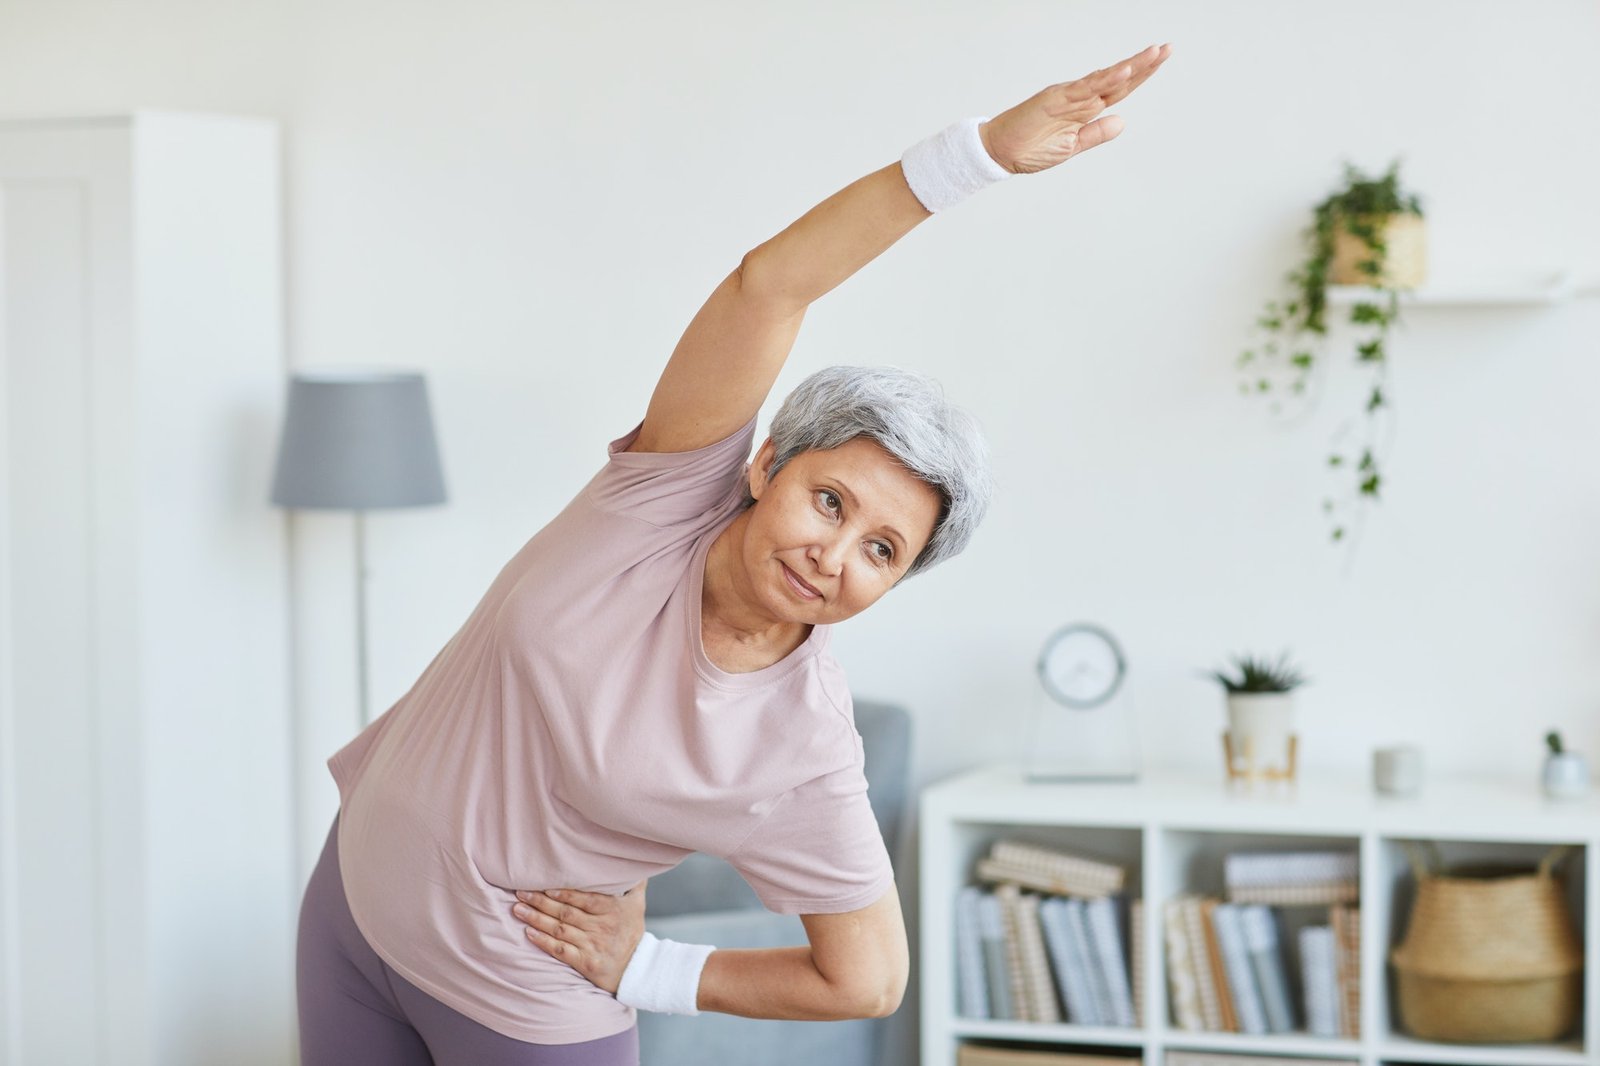 Senior woman exercising at home